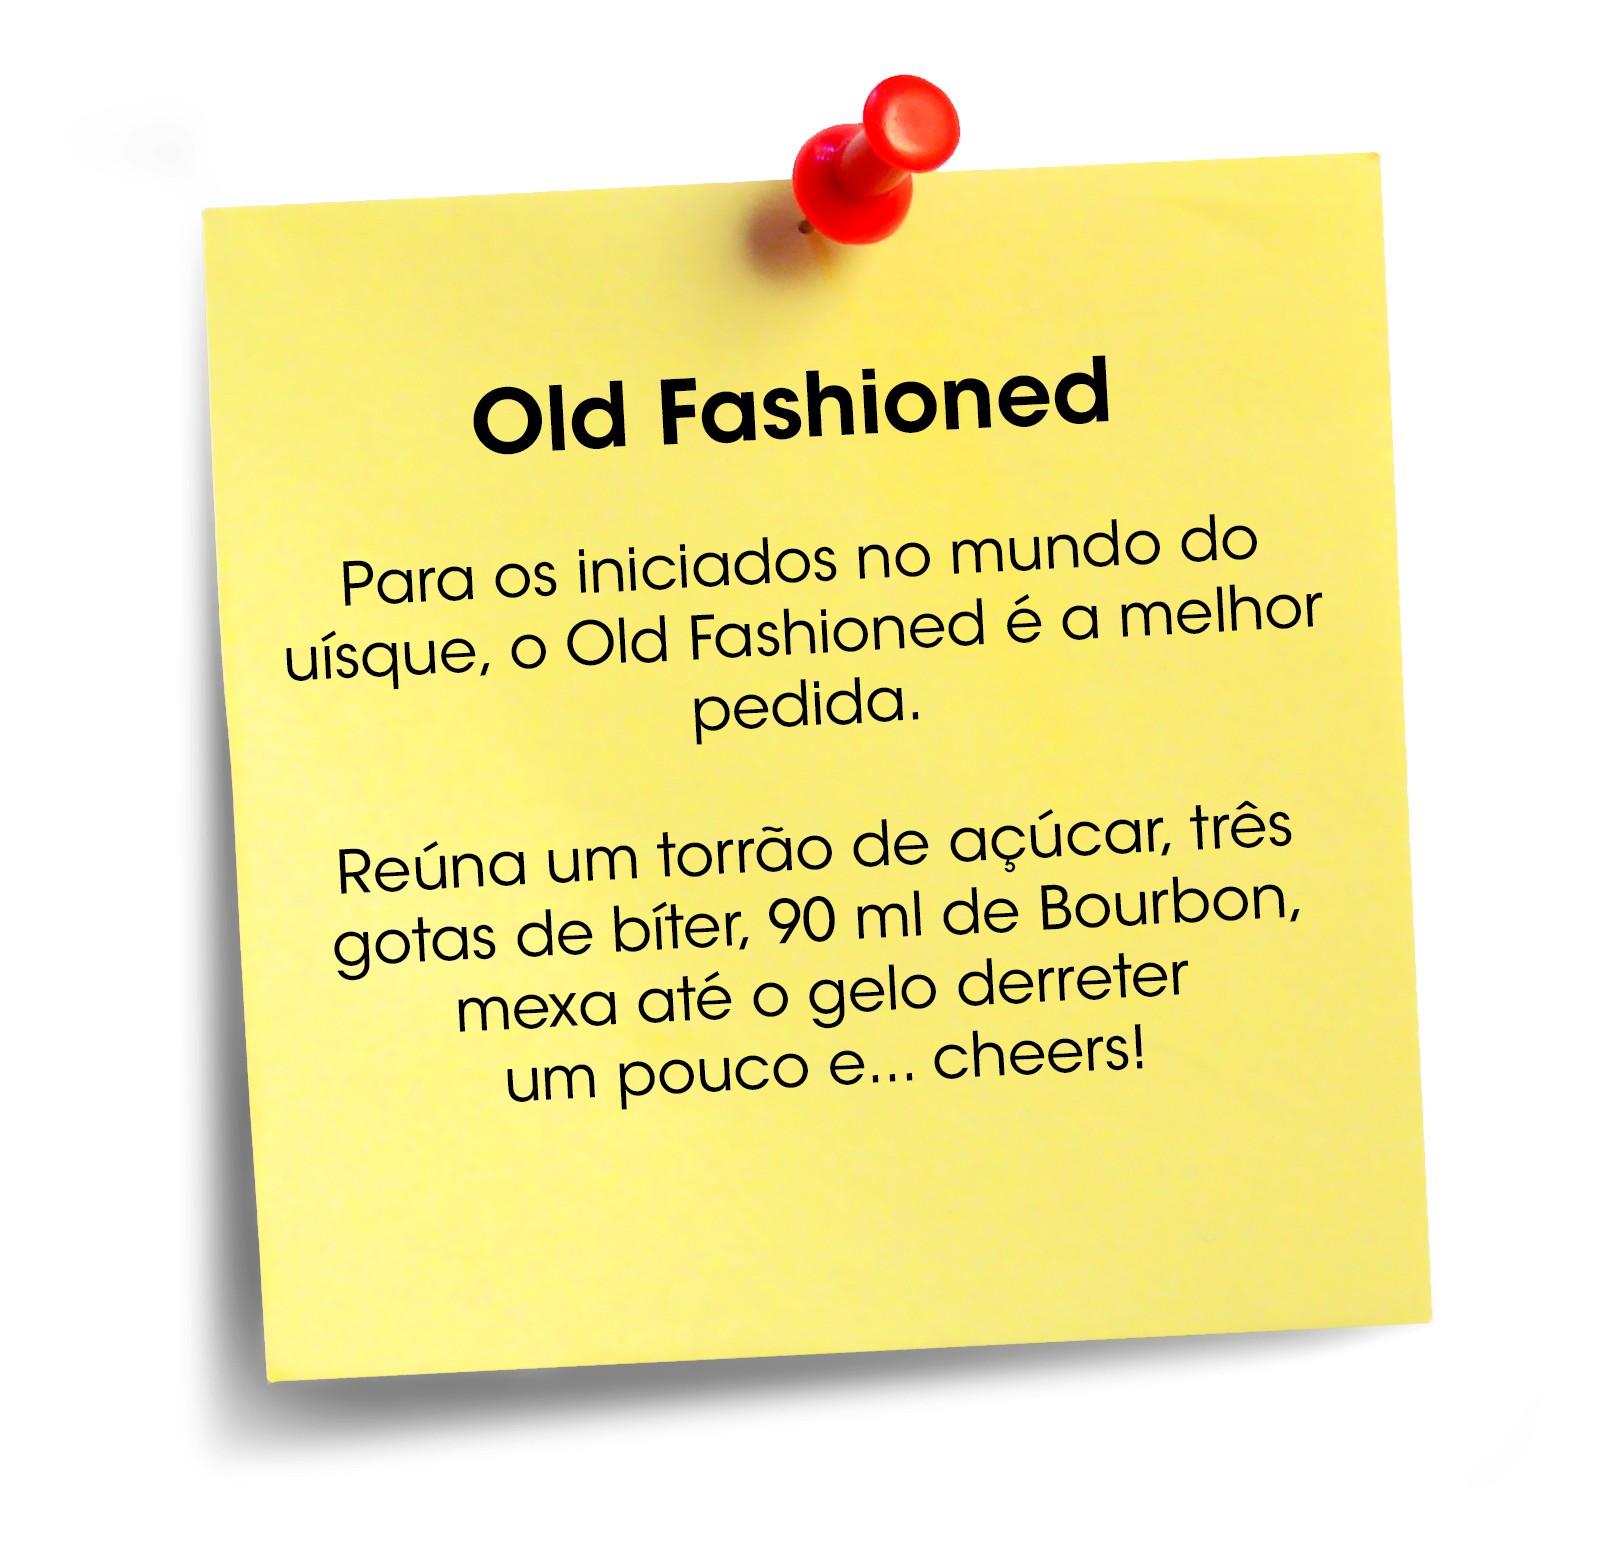 Old Fashioned (Foto: Reprodução)